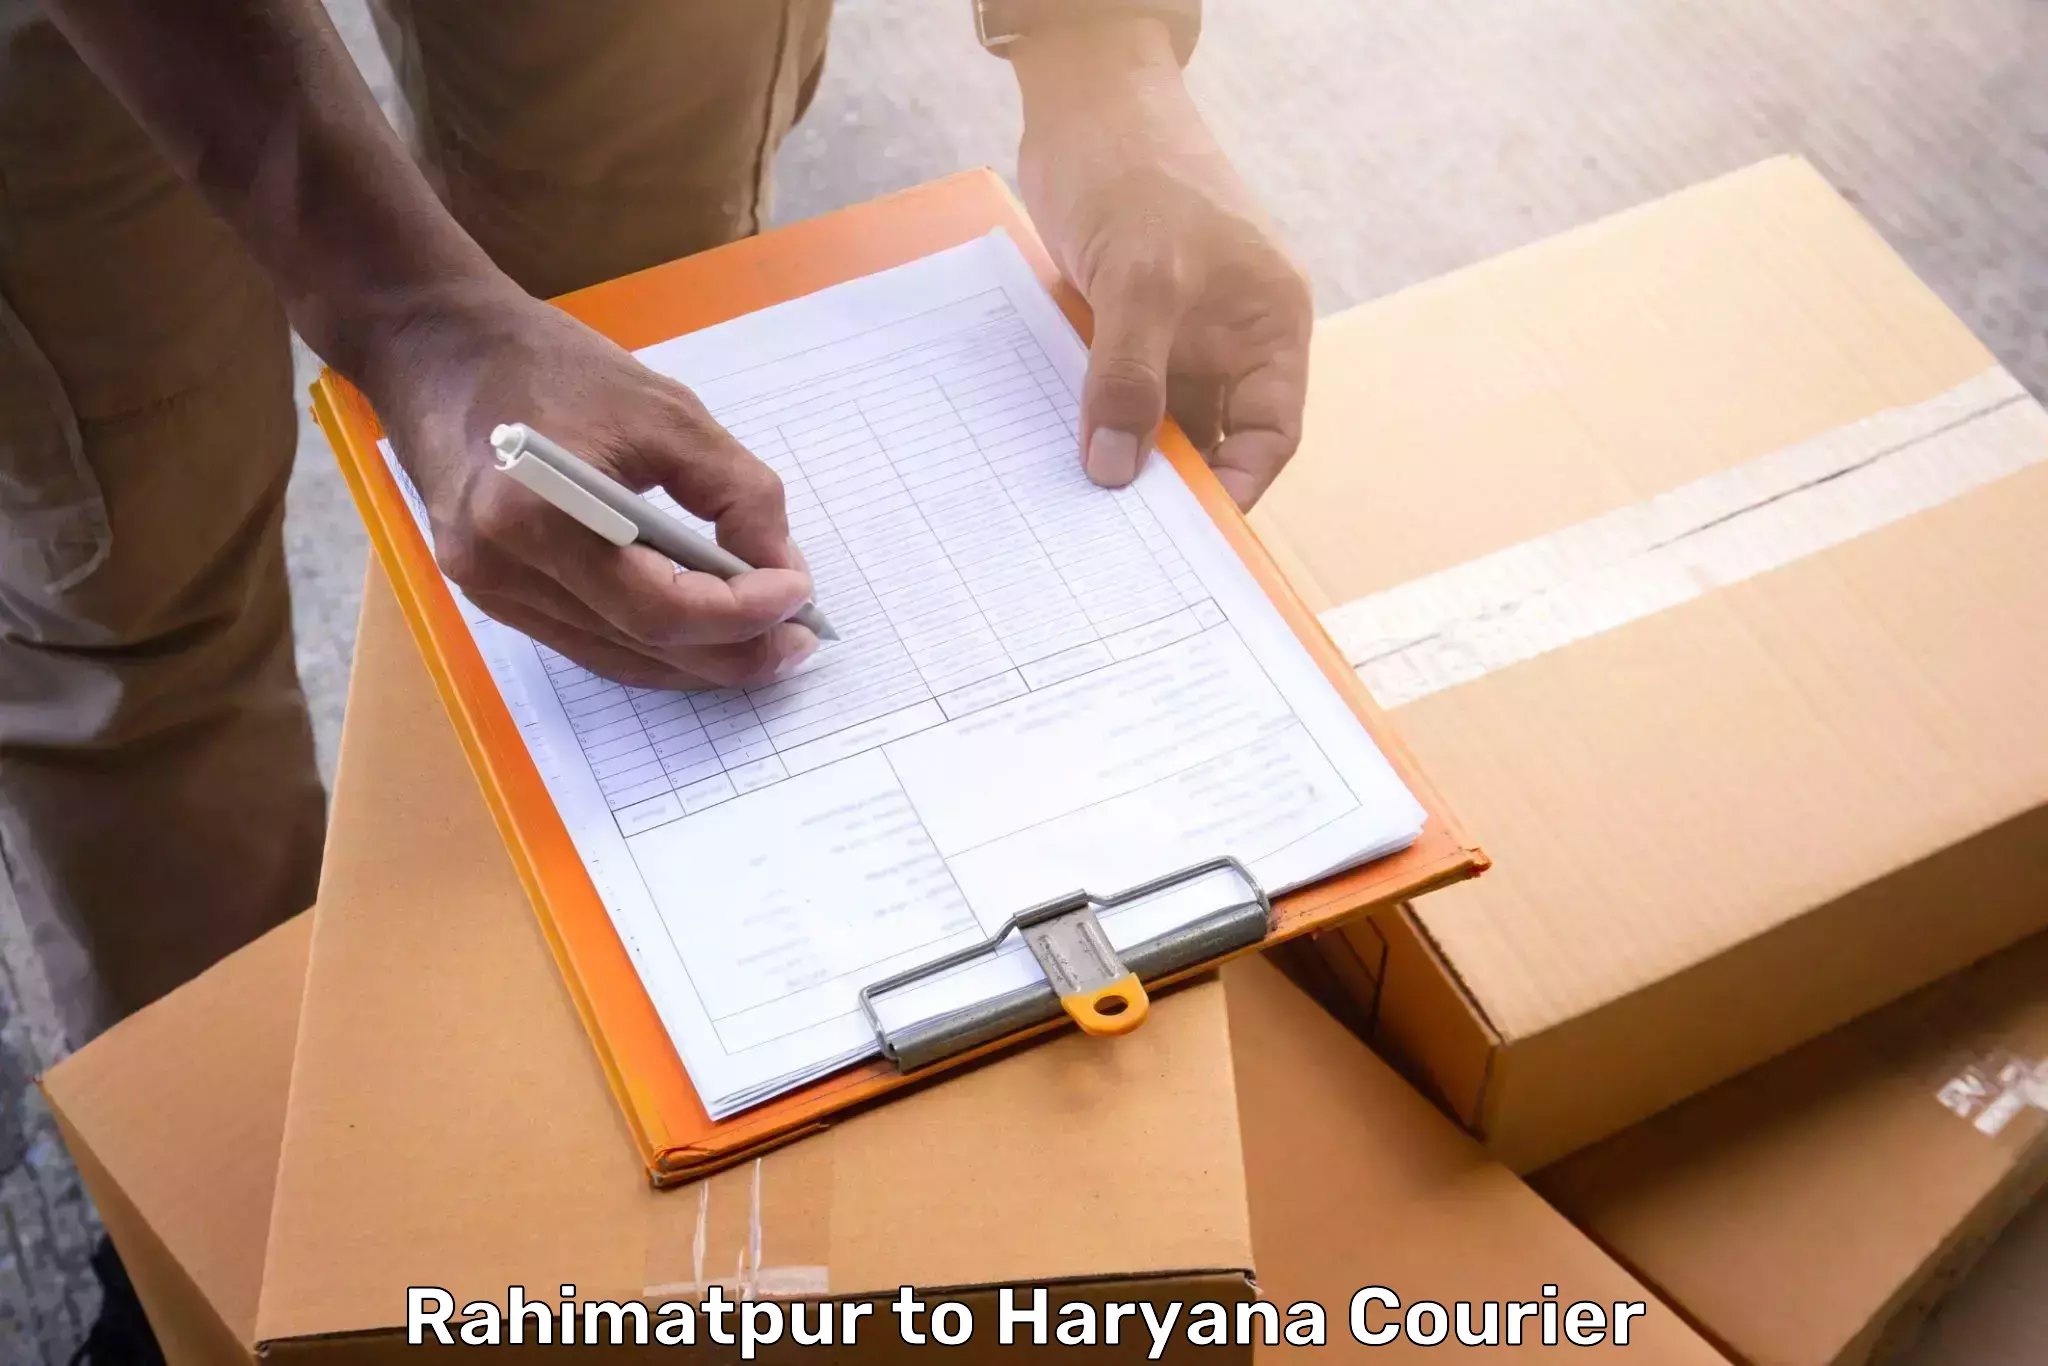 Baggage shipping experts Rahimatpur to Abhimanyupur